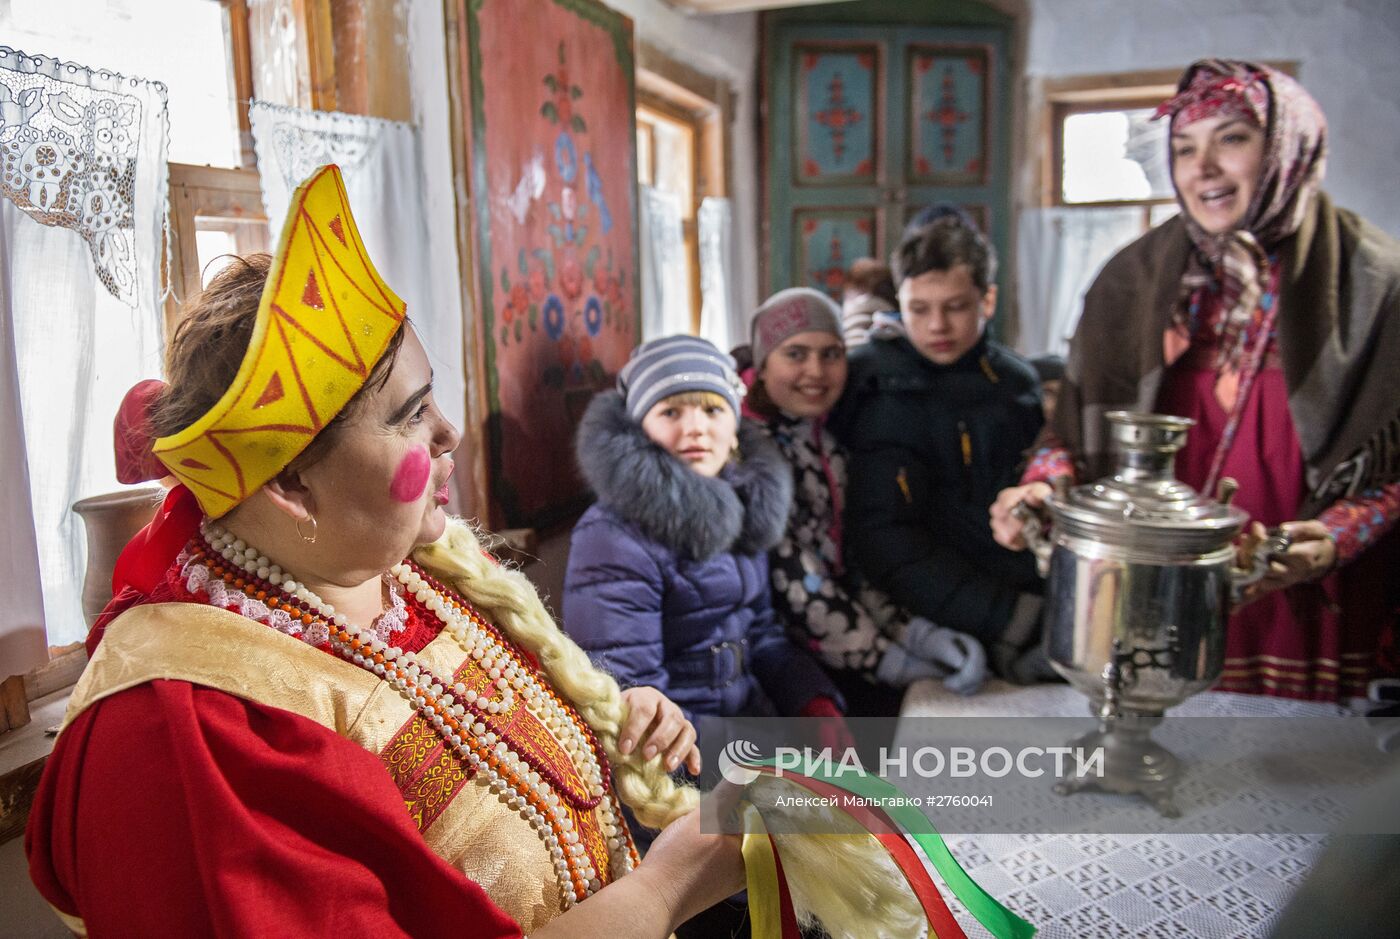 Резиденция Деда Мороза в Омской области